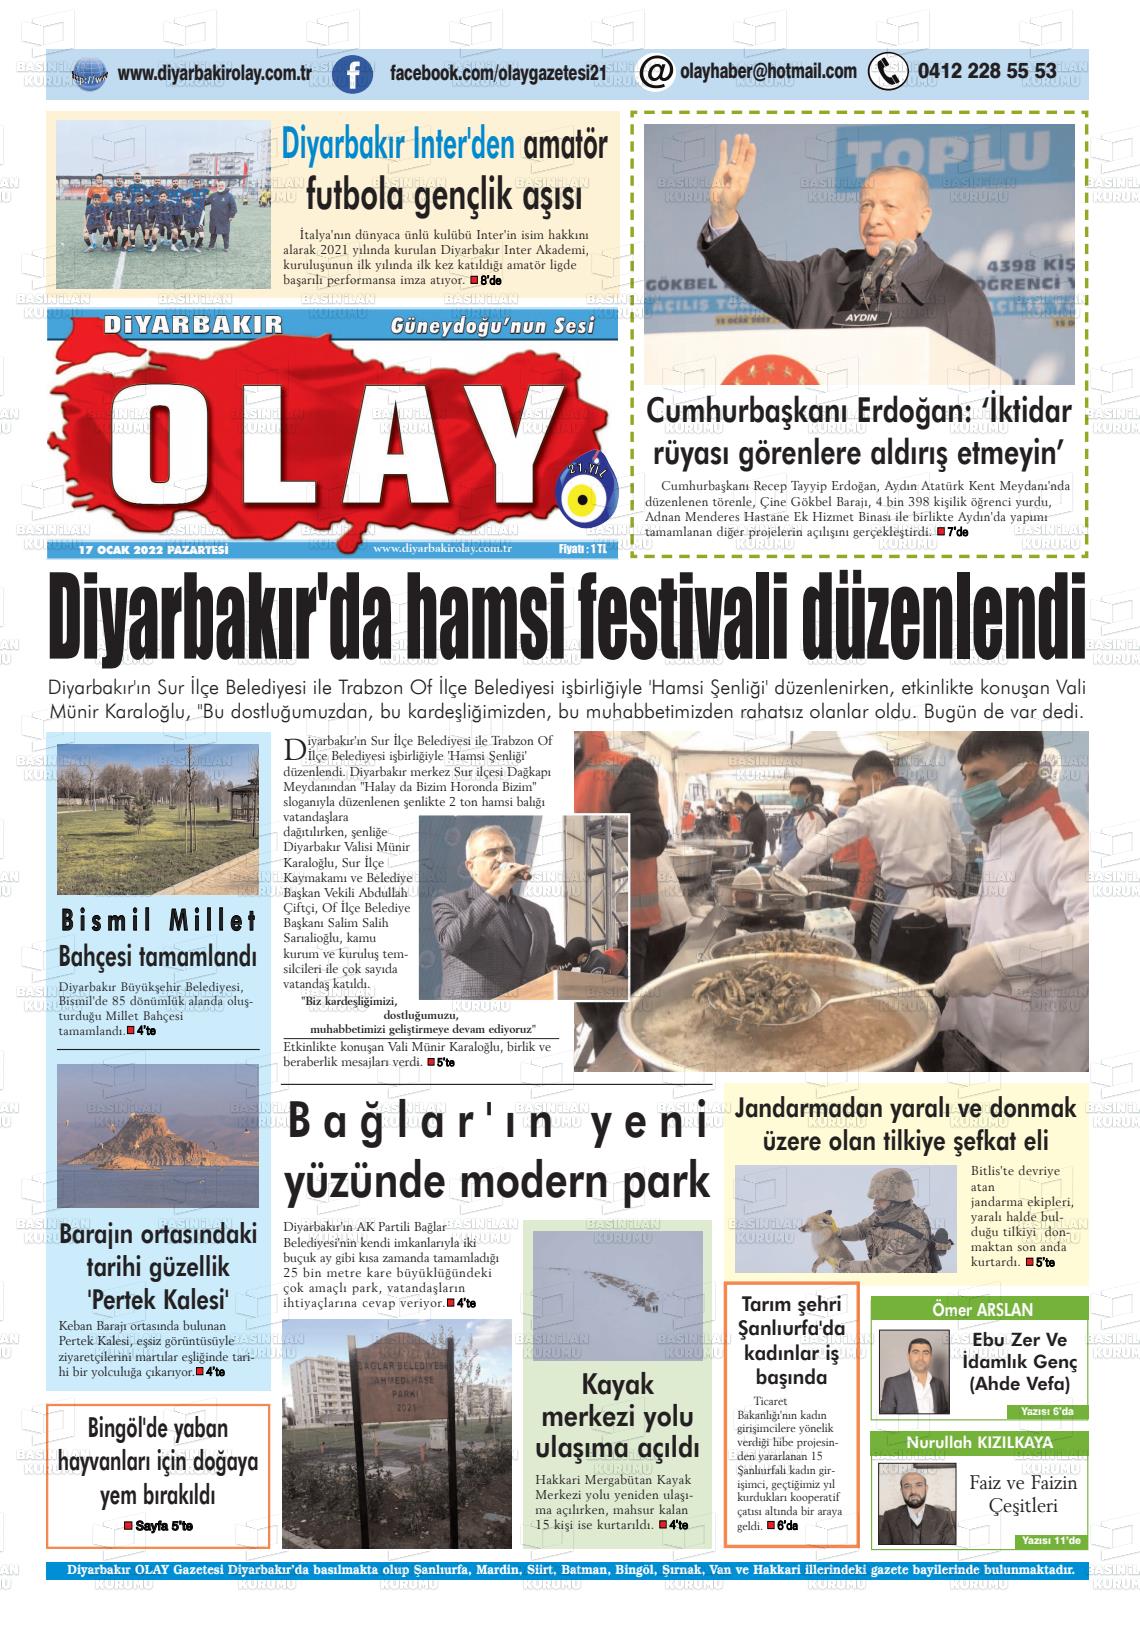 17 Ocak 2022 Diyarbakir Olay Gazete Manşeti